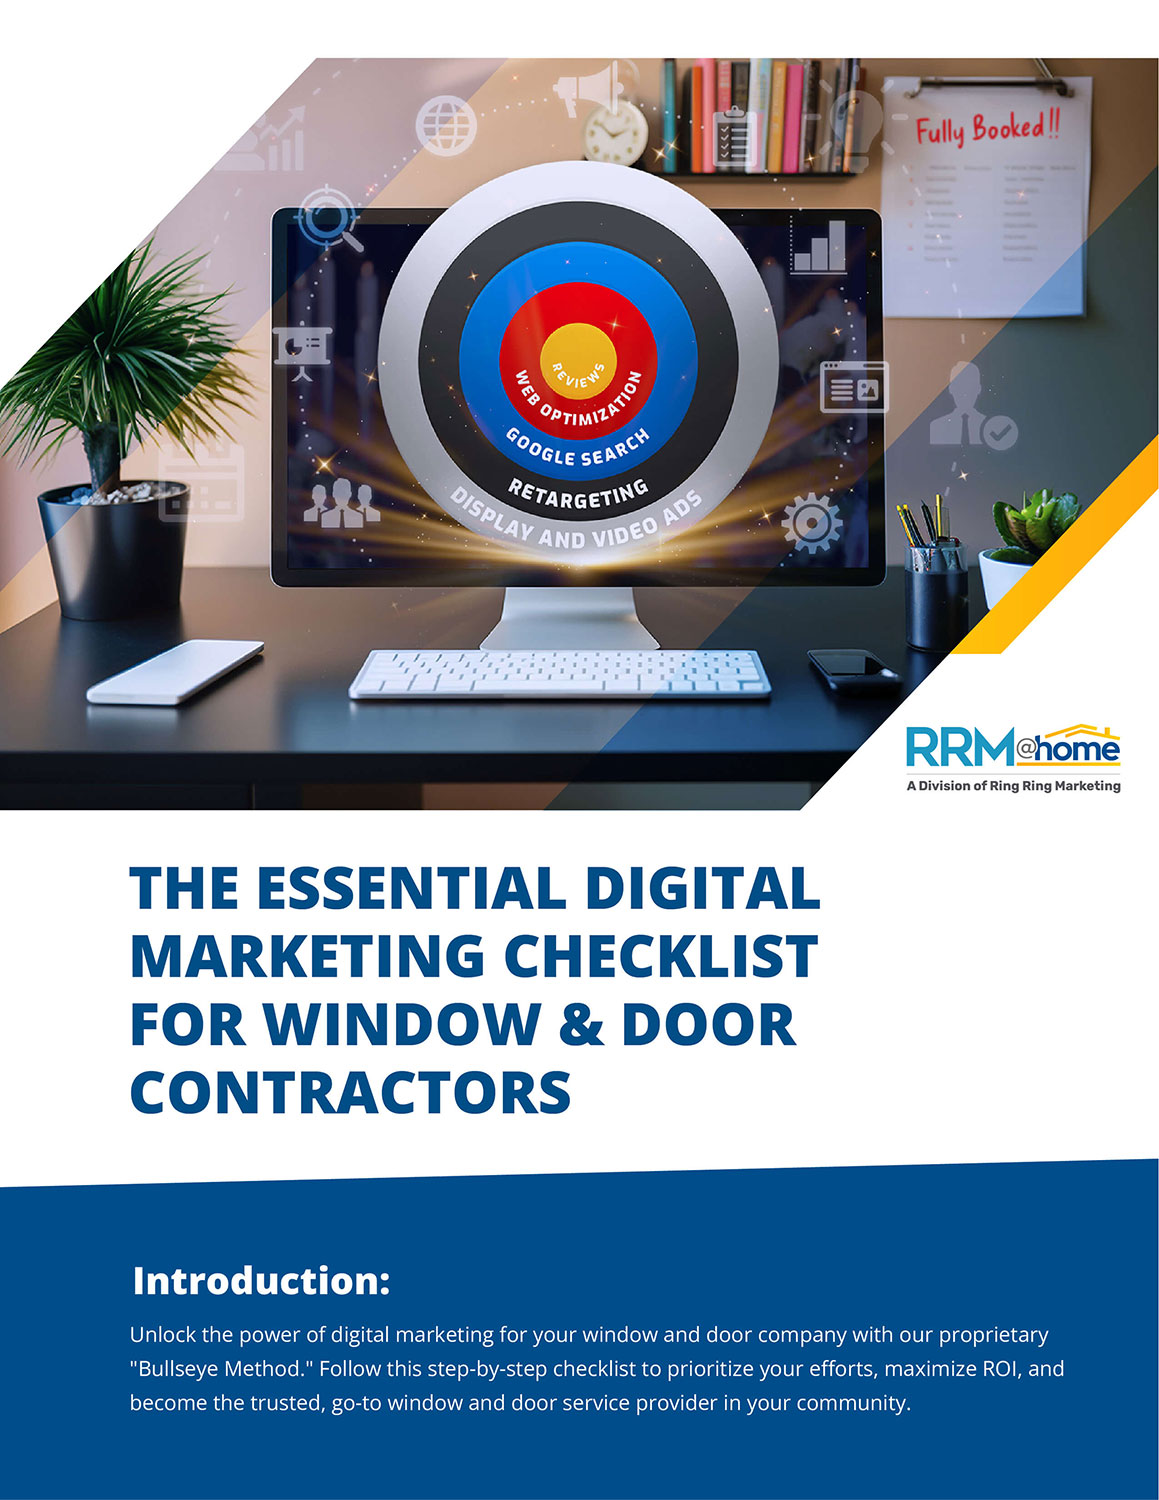 Essential Digital Marketing Checklist for Window and Door Contractors